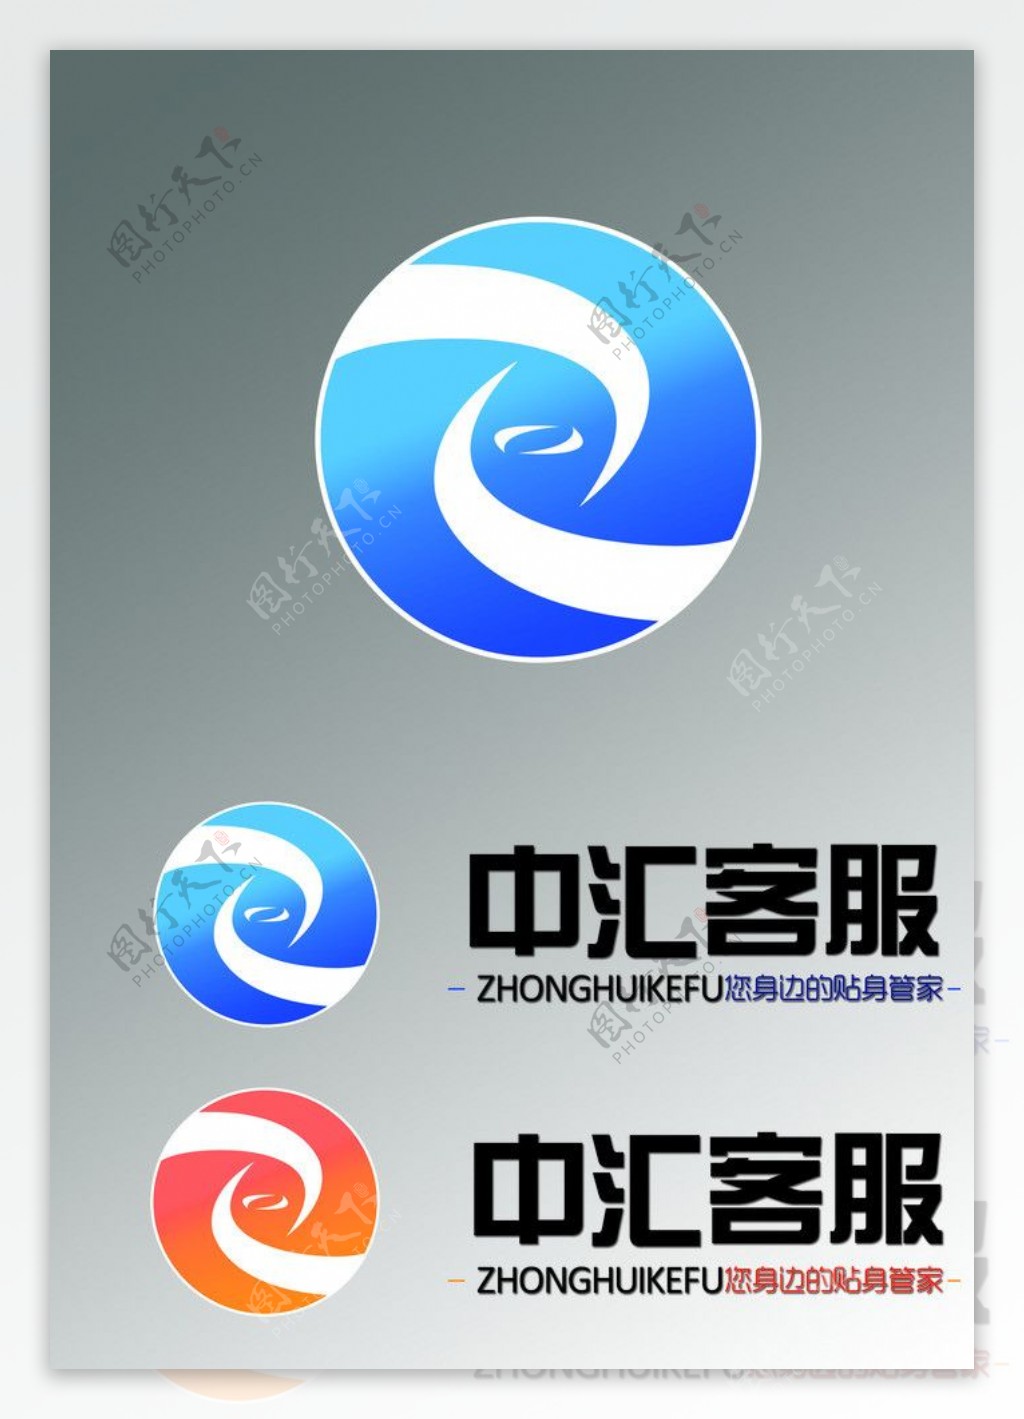 中汇客服logo图片